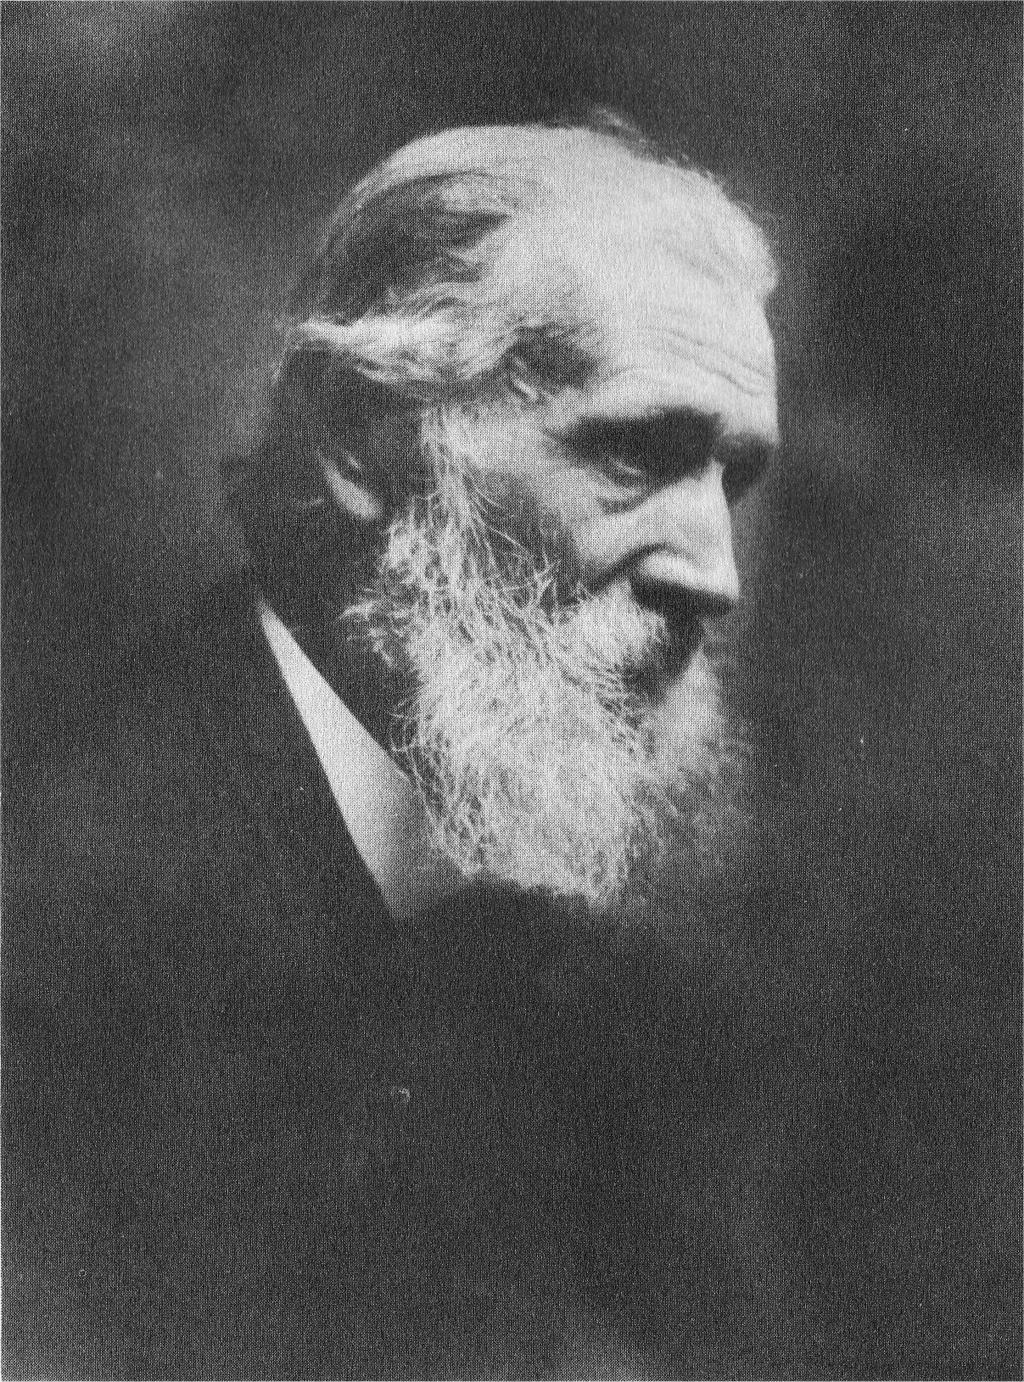 Early Leaders John Muir (1838-1914: Sierra Club,